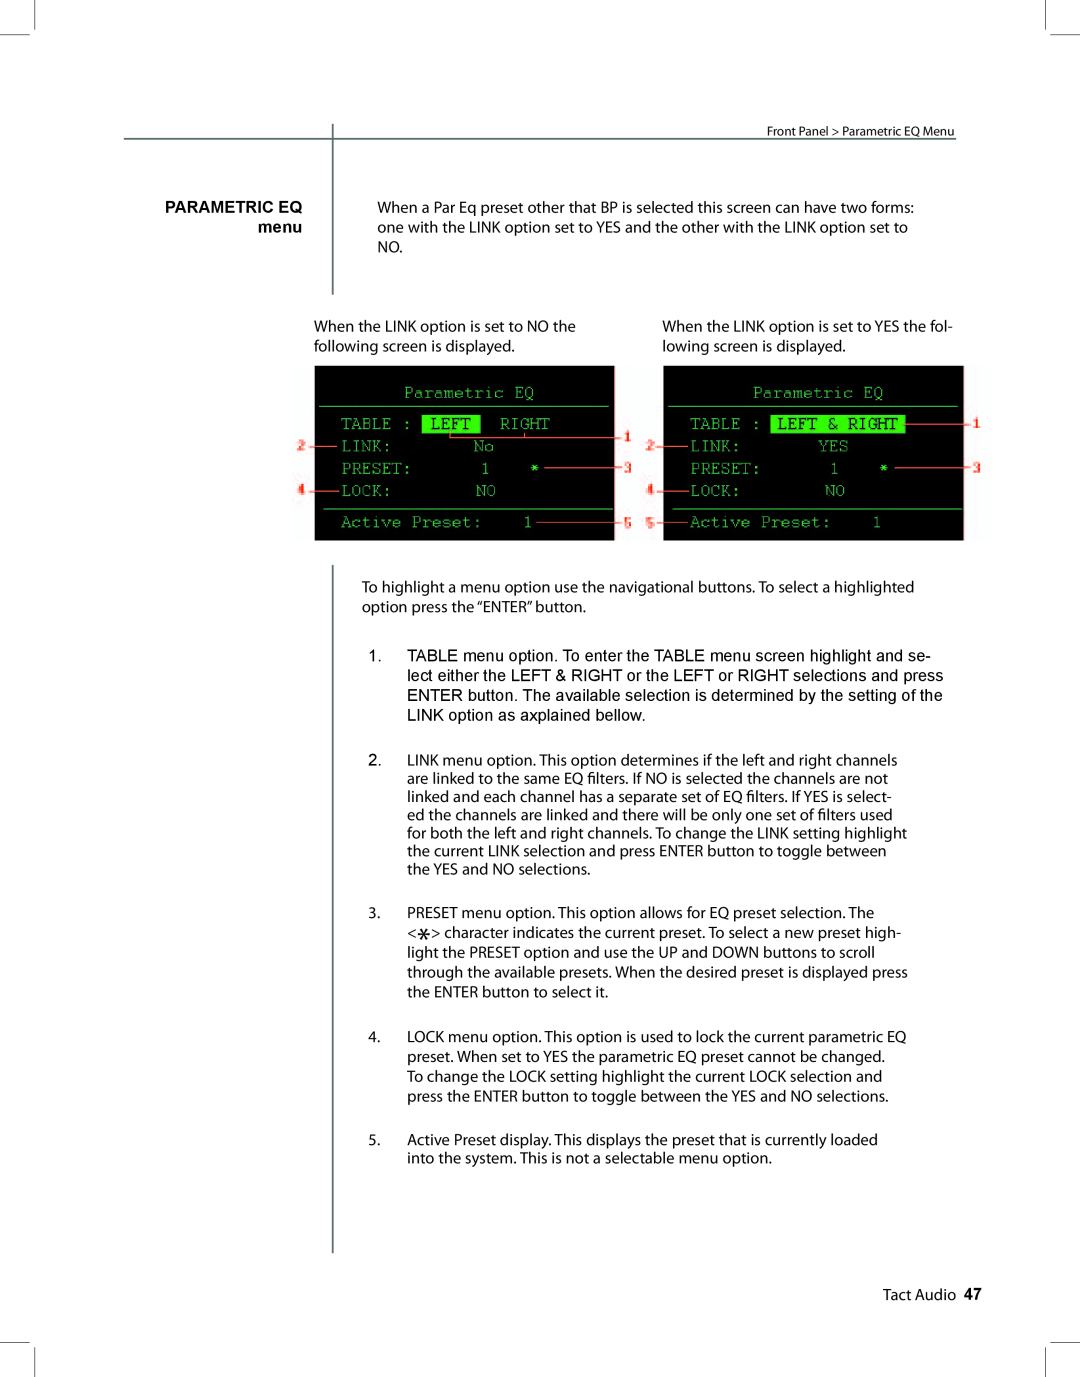 TacT Audio RCS 2.2 XP owner manual Parametric Eq, menu 